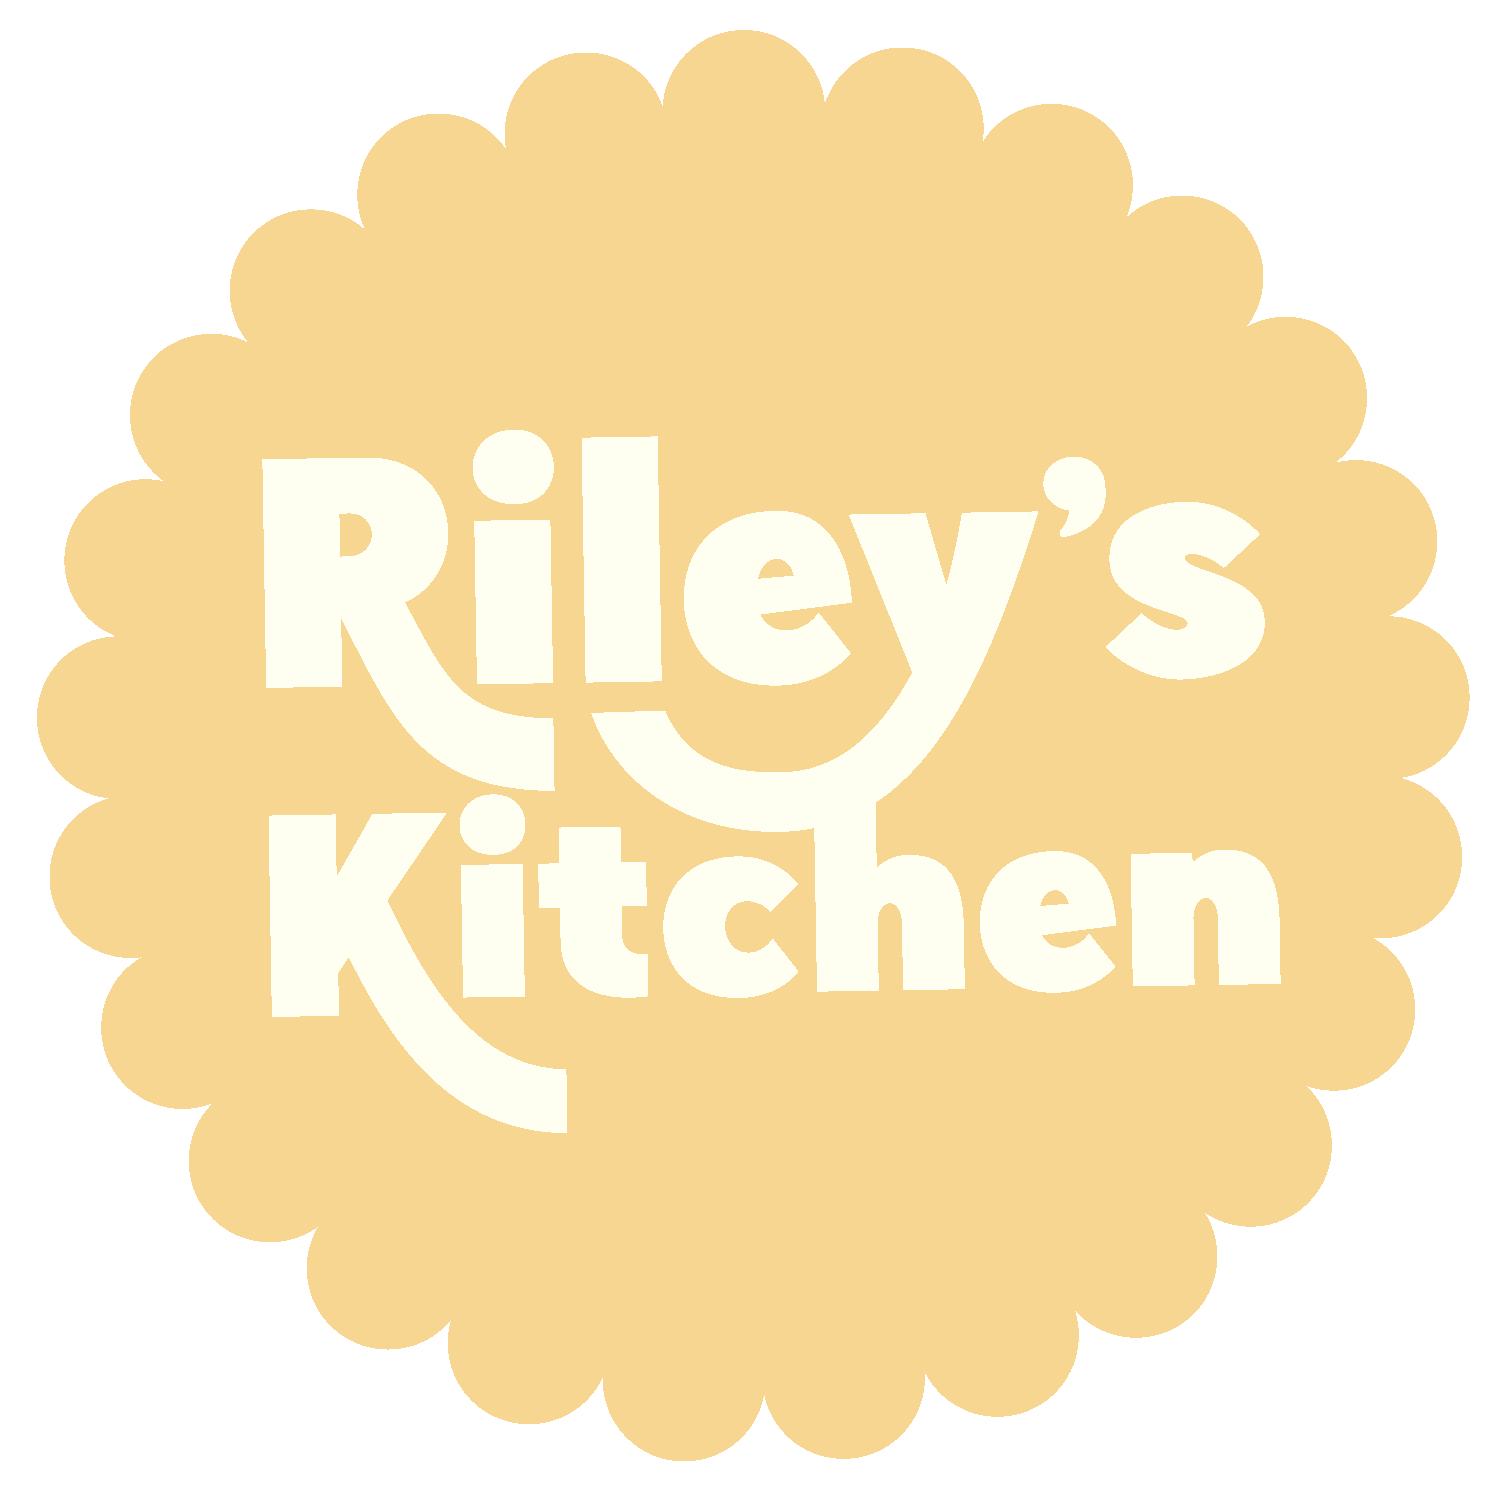 Riley's Kitchen